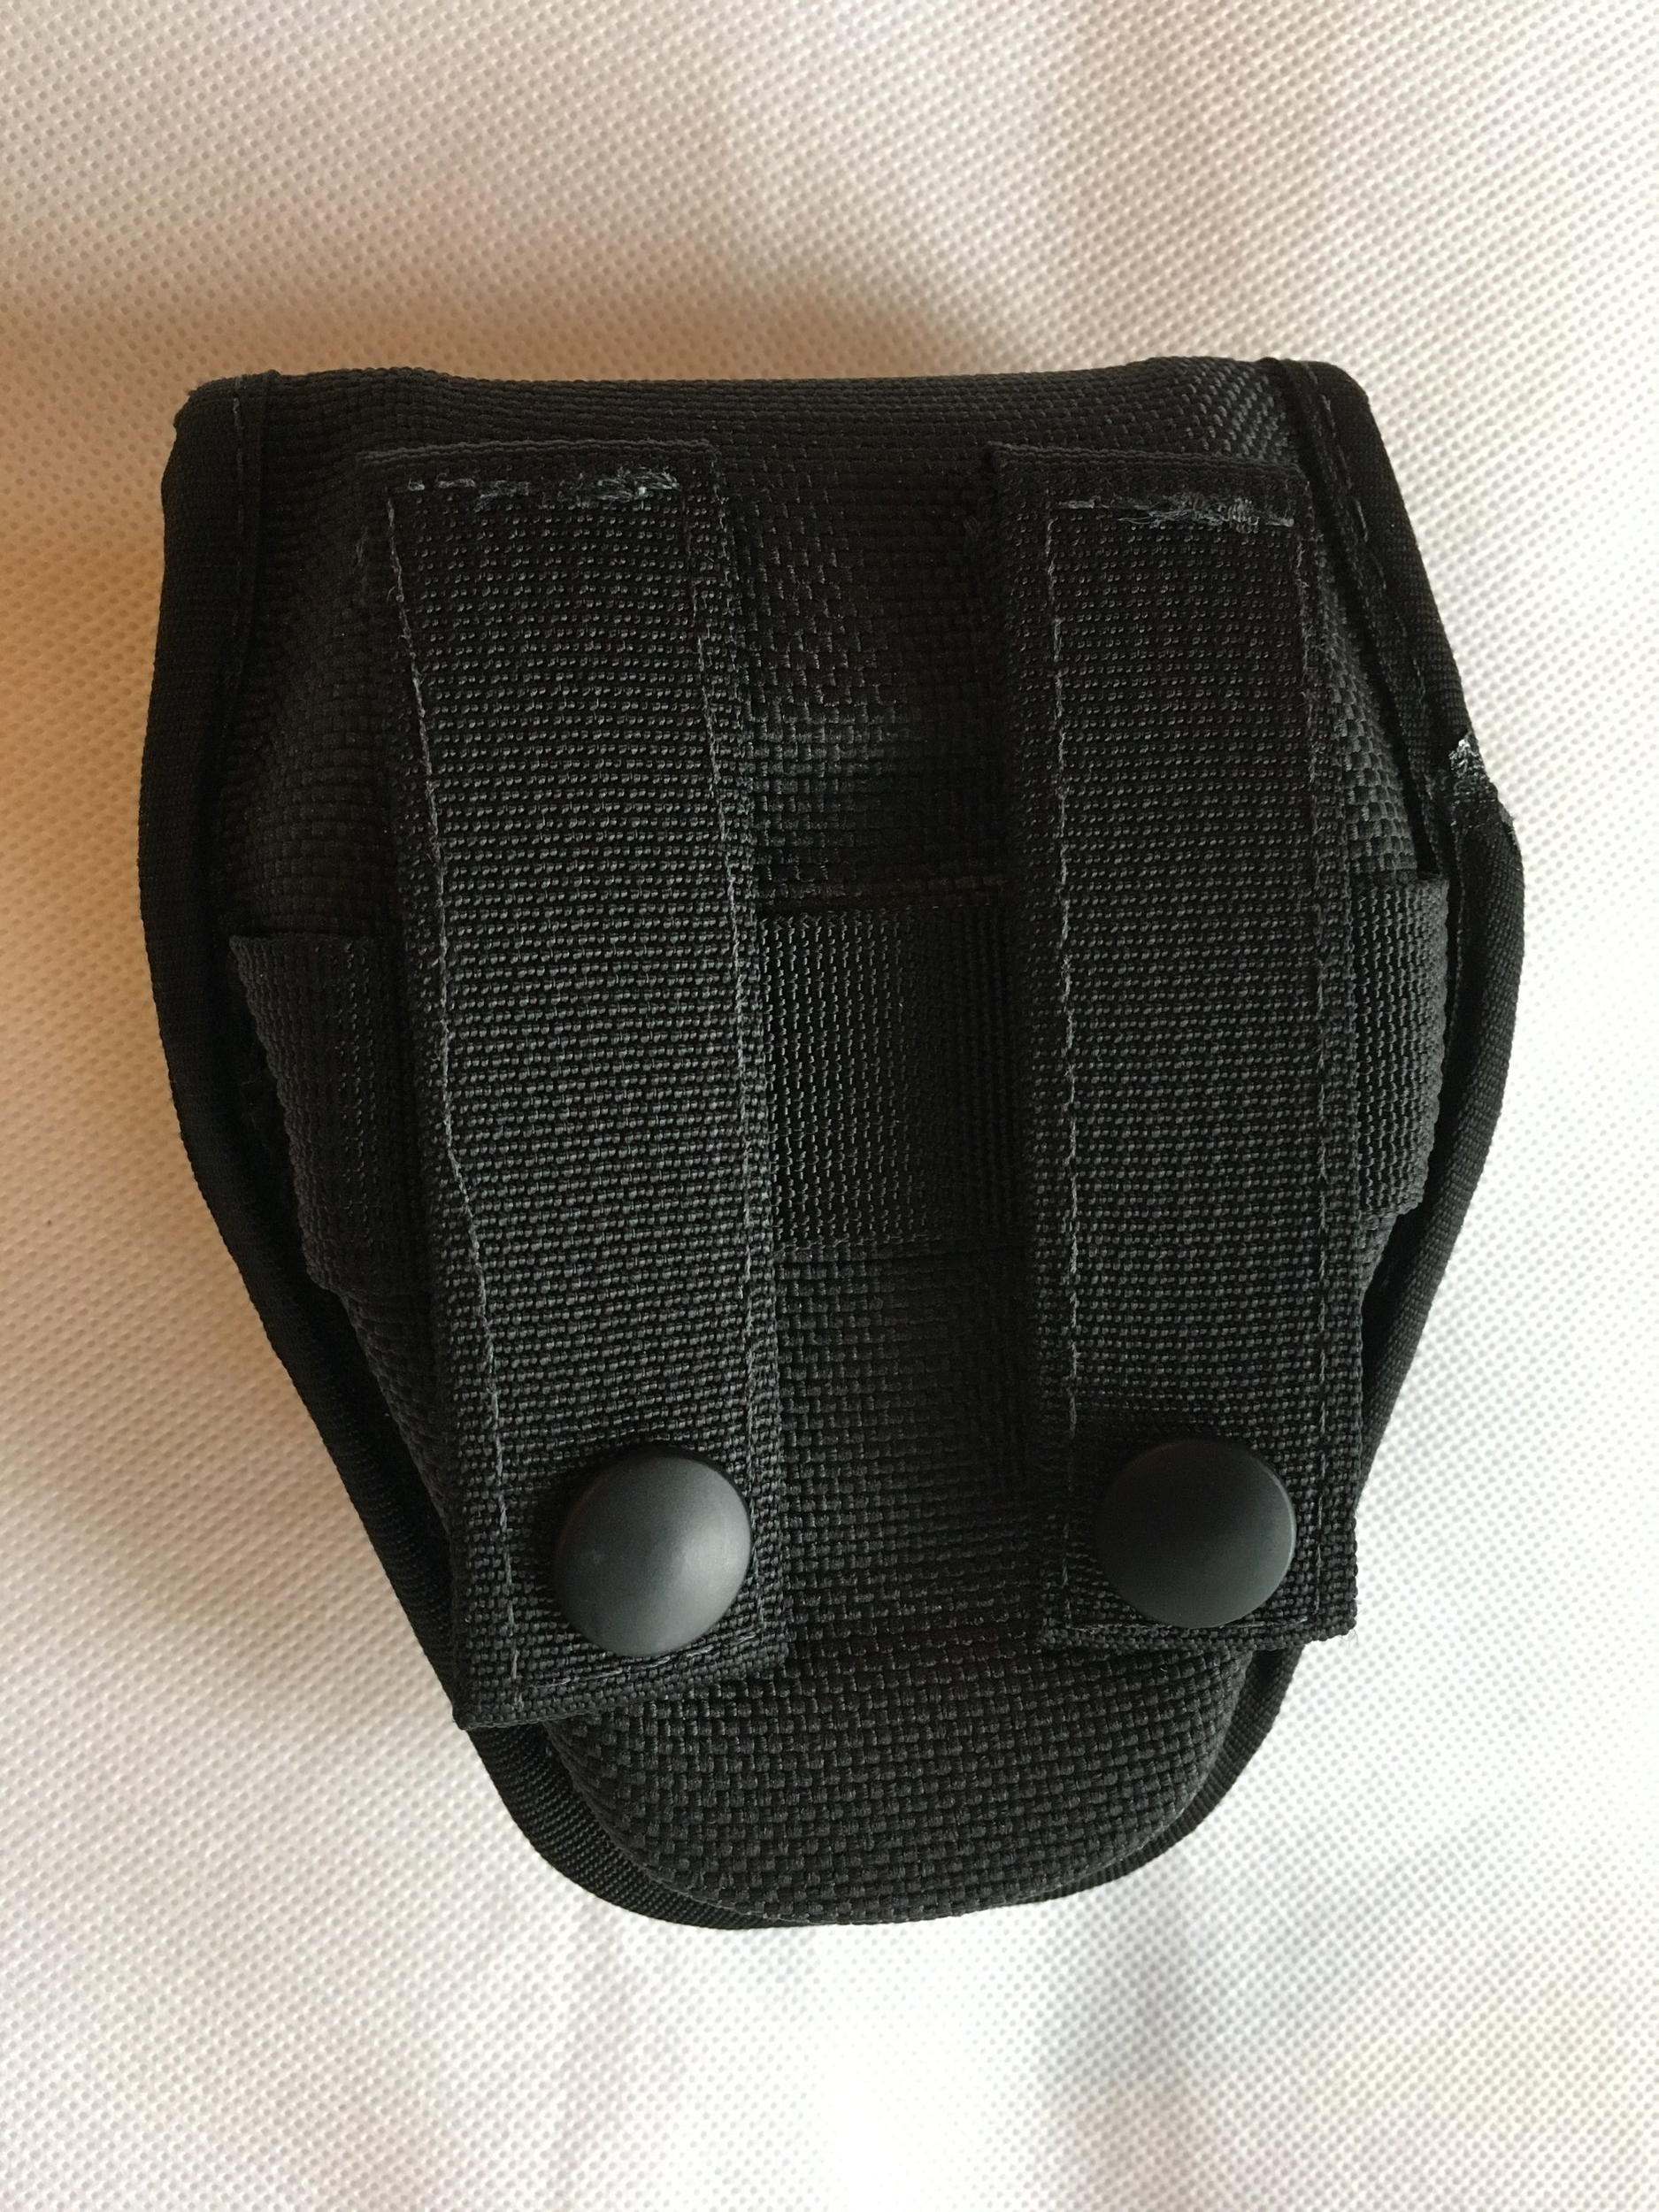 Bianchi 25374 Black Coptex Knit Covered Handcuff Case w/MOLLE Attachment 